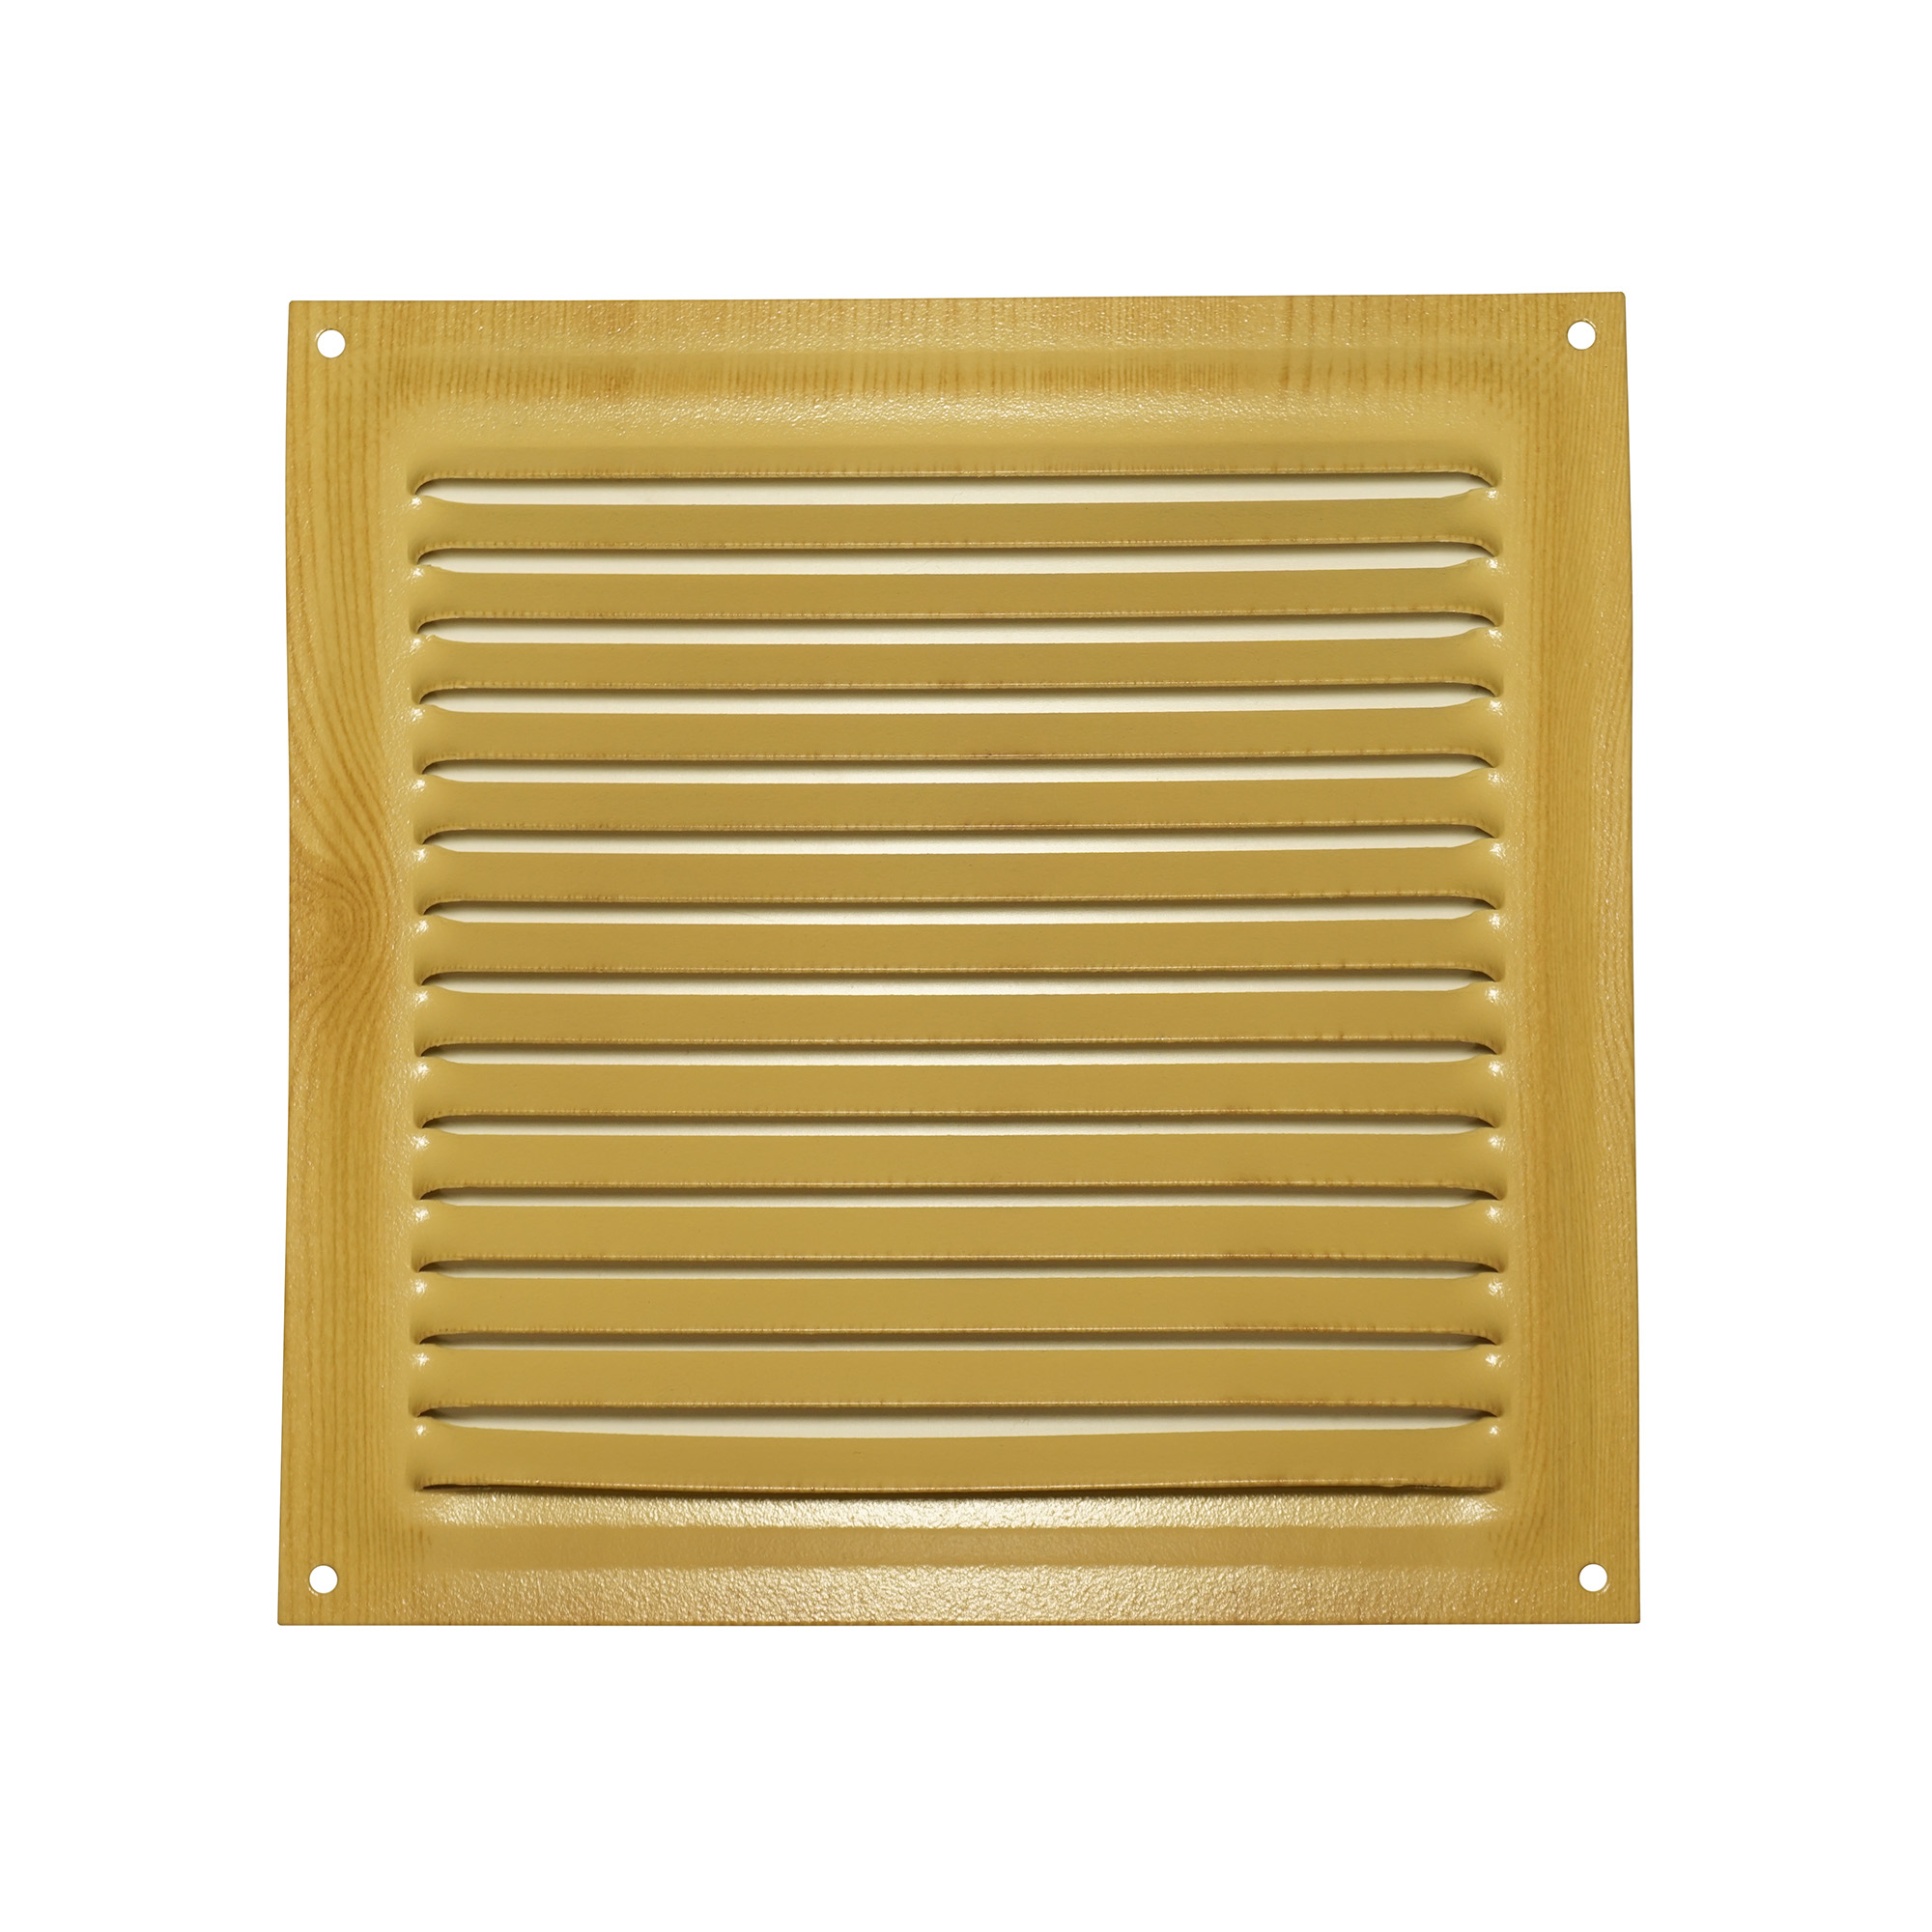 Решетка вентиляционная Трибатрон Сосна 150x150 мм решетка вентиляционная equation 150x150 мм пластик цвет коричневый